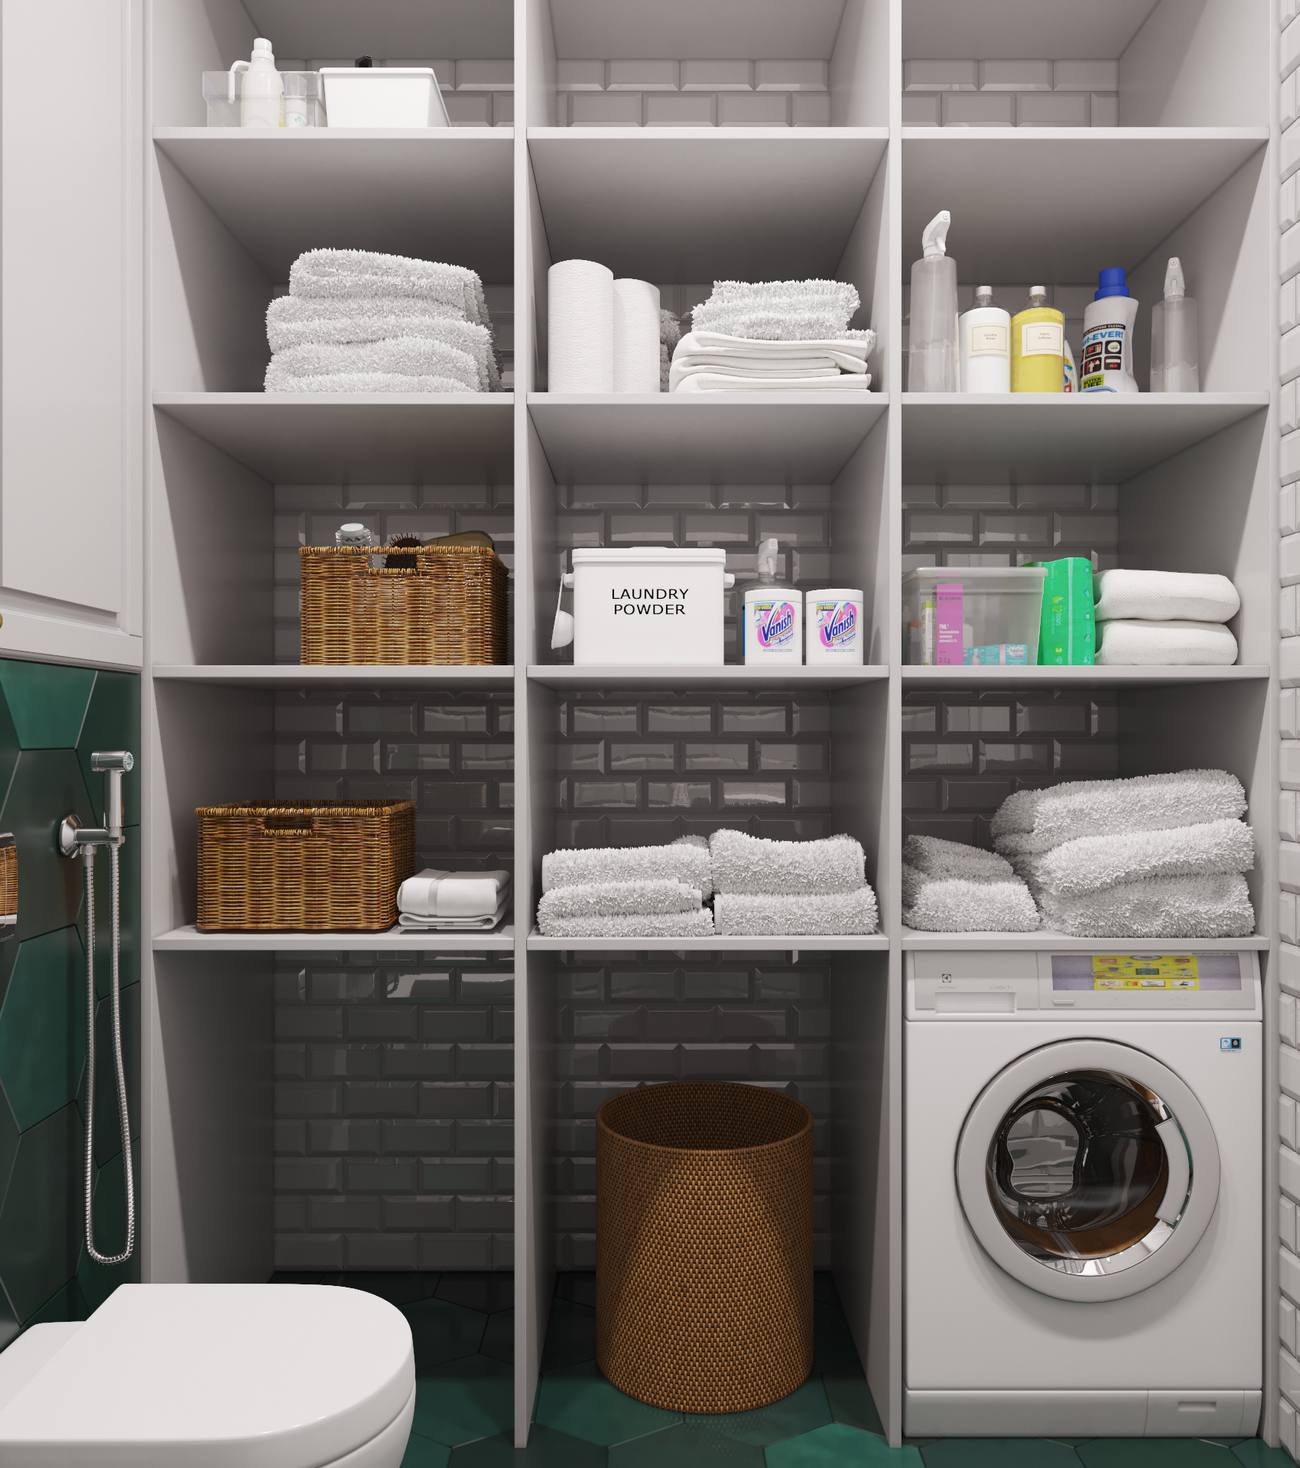 Góc phải toilet là hệ thống tủ lưu trữ mở với rất nhiều ngăn riêng biệt để phân bố khăn tắm, sản phẩm vệ sinh, giỏ mây lưu trữ và bên dưới là góc đặt máy giặt gọn gàng, tiện ích.